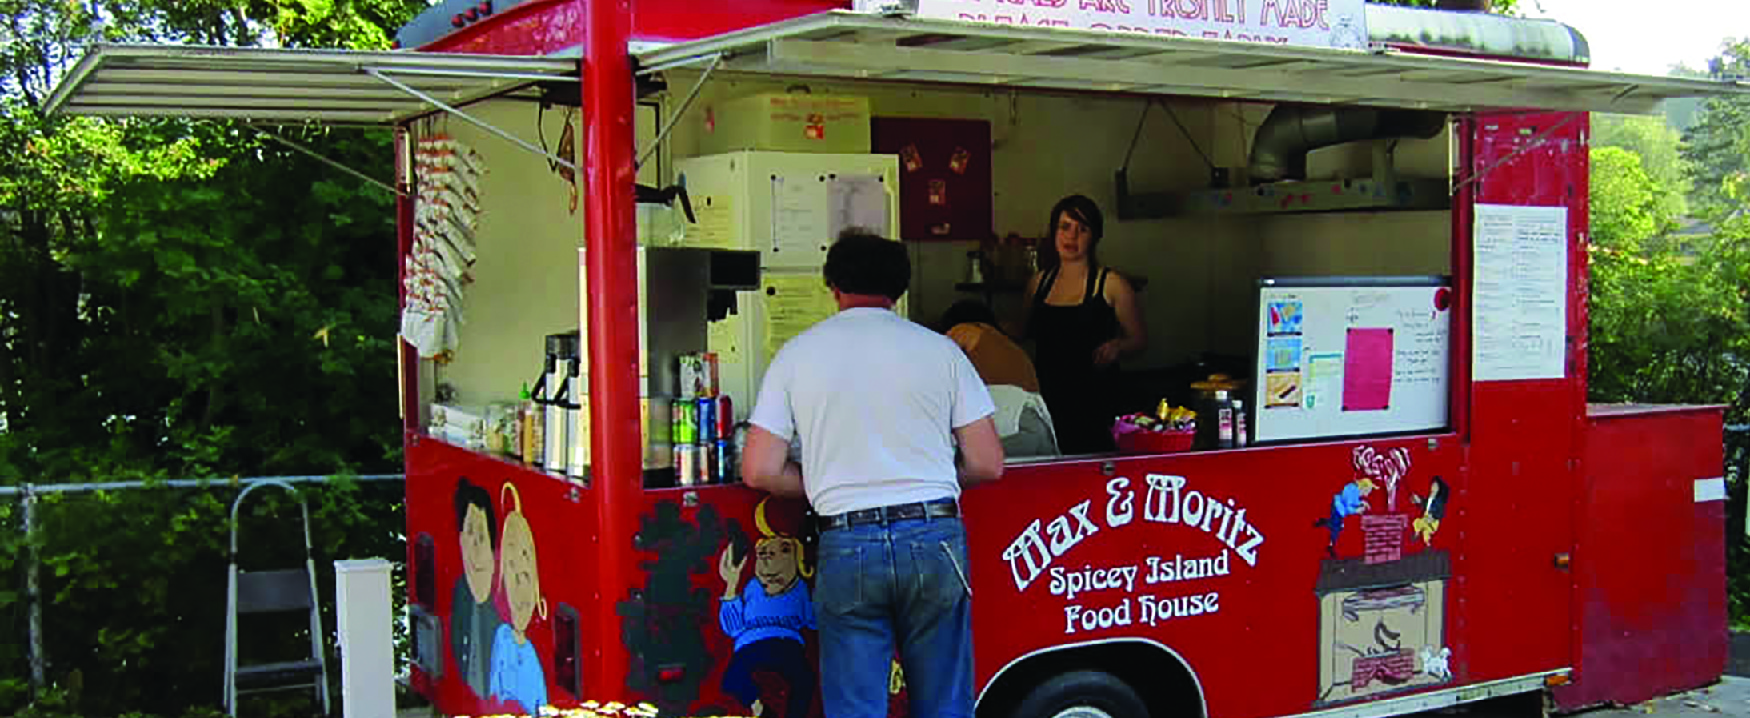 Foto de duas pessoas em um food truck atendendo um cliente.